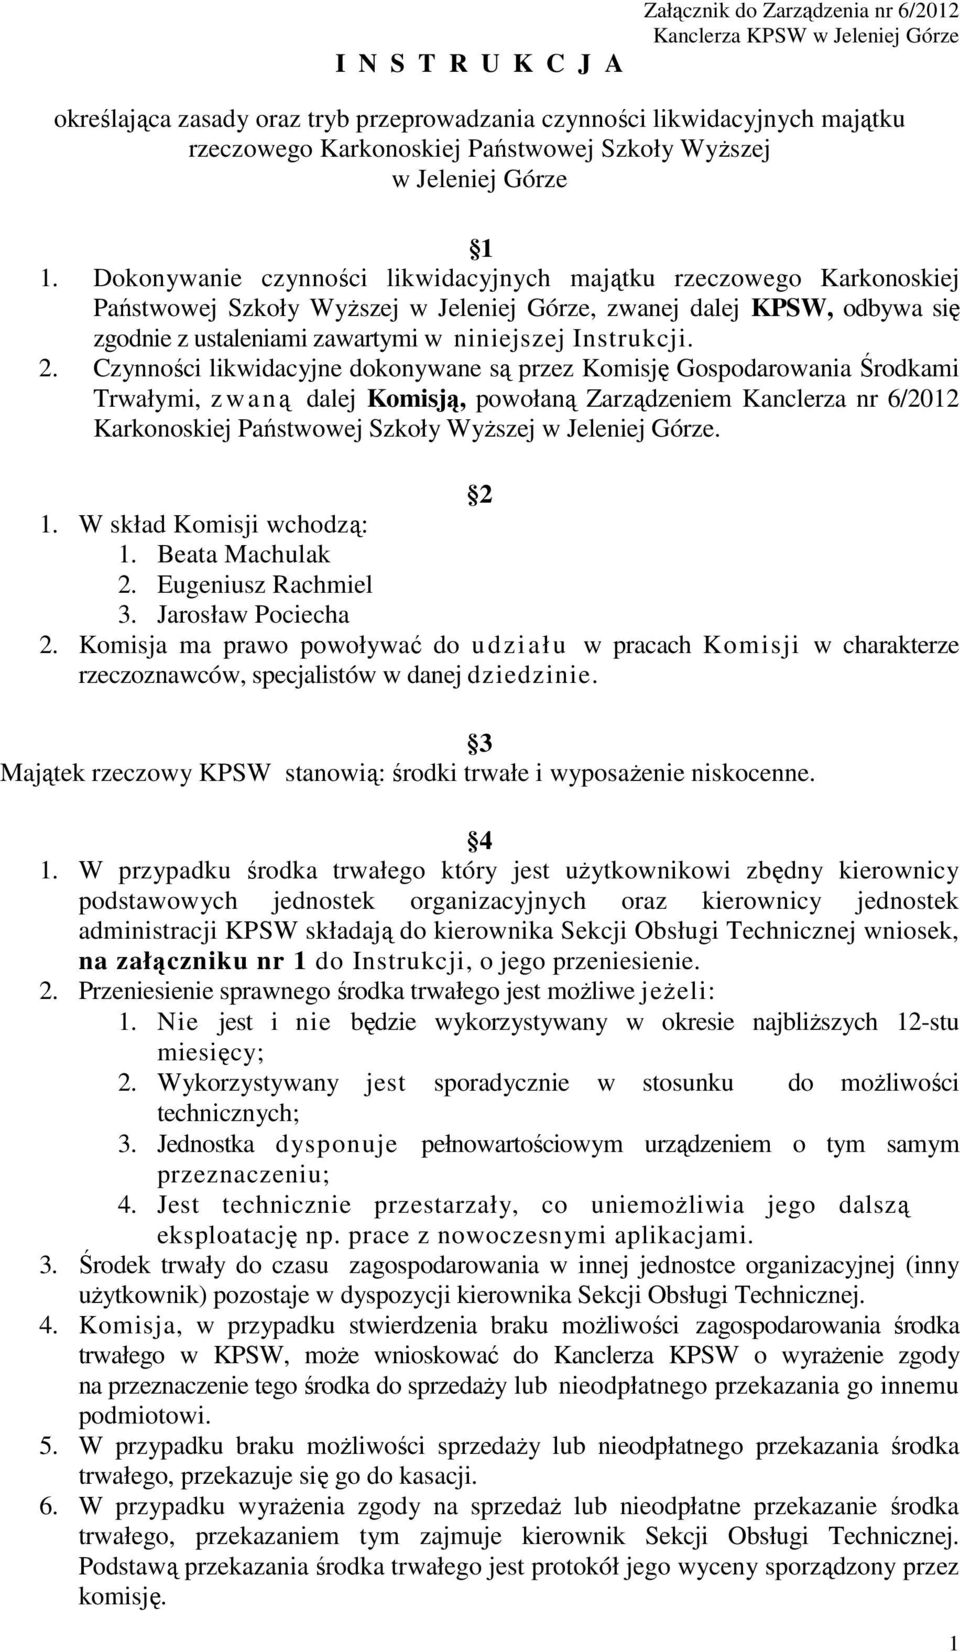 Dokonywanie czynności likwidacyjnych majątku rzeczowego Karkonoskiej Państwowej Szkoły Wyższej w Jeleniej Górze, zwanej dalej KPSW, odbywa się zgodnie z ustaleniami zawartymi w niniejszej Instrukcji.